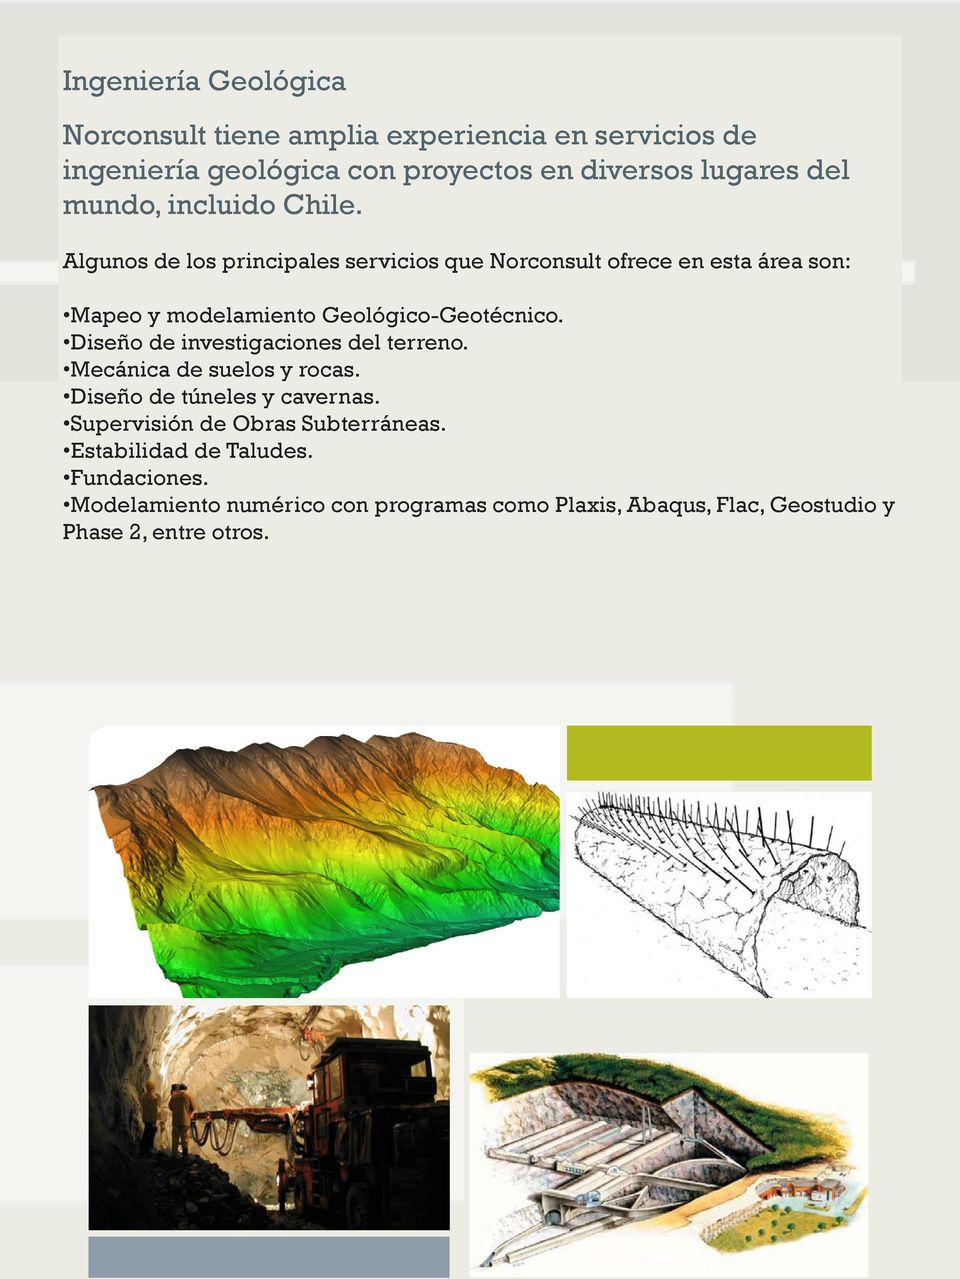 Algunos de los principales servicios que Norconsult ofrece en esta área son: Mapeo y modelamiento Geológico-Geotécnico.